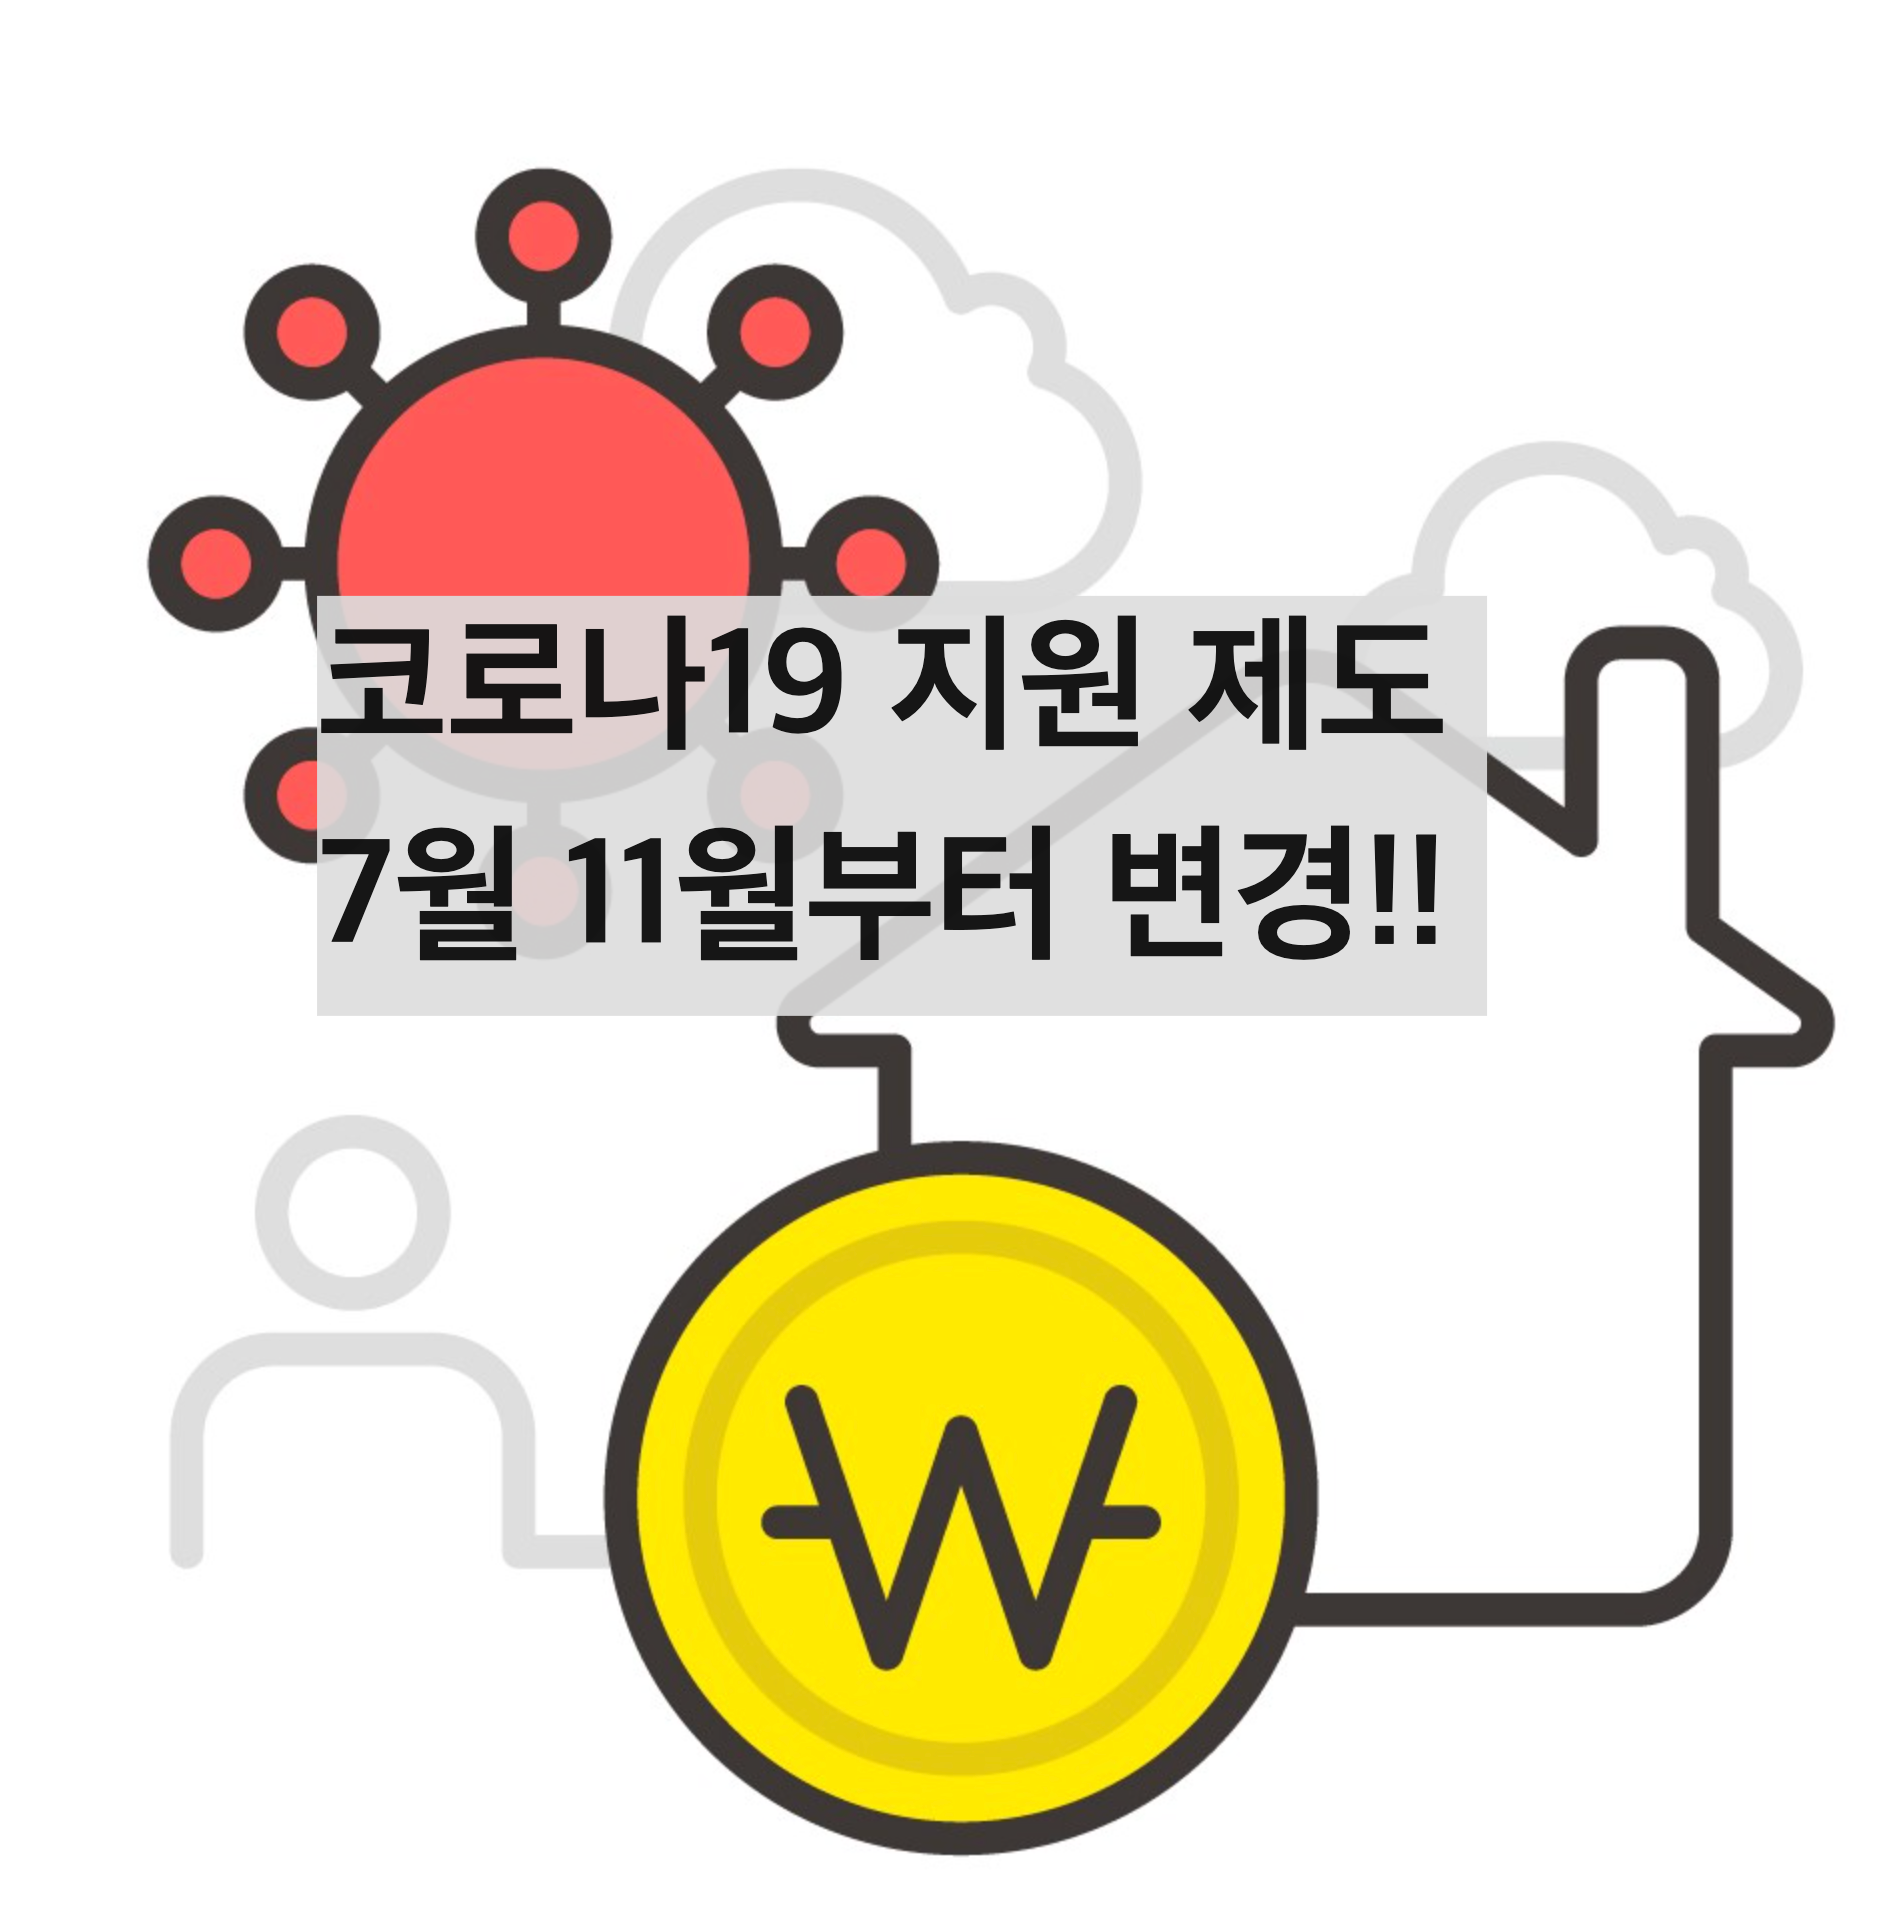 코로나19 생활지원비 7월 11일부터 개편!(+신청방법&#44; 서류)